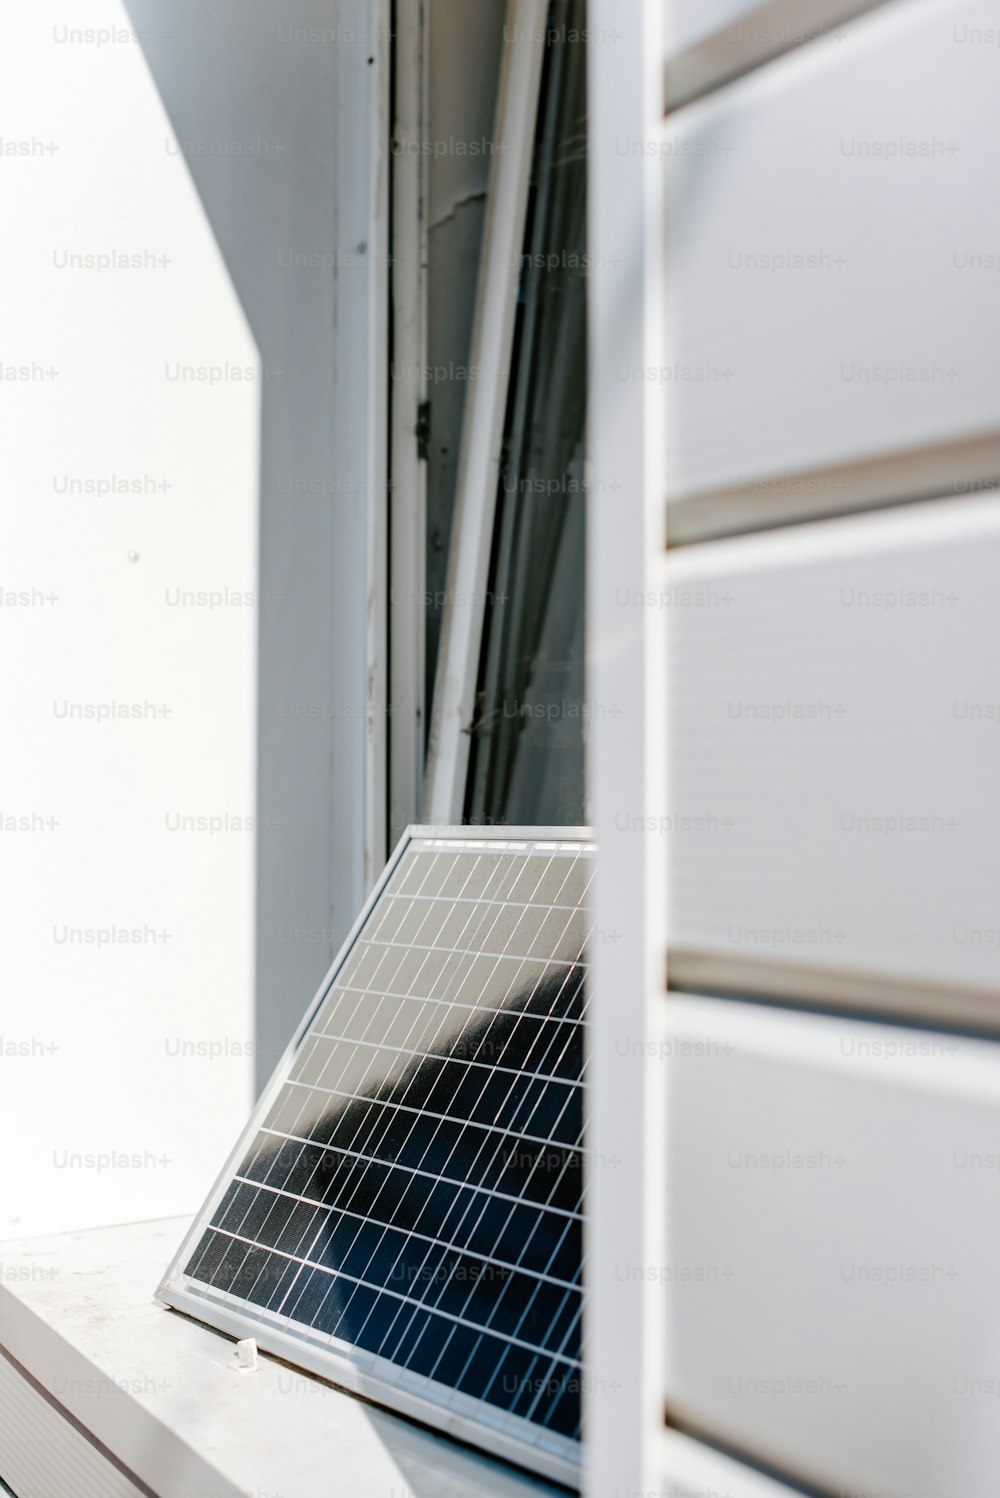 um peitoril da janela com um painel solar em cima dele